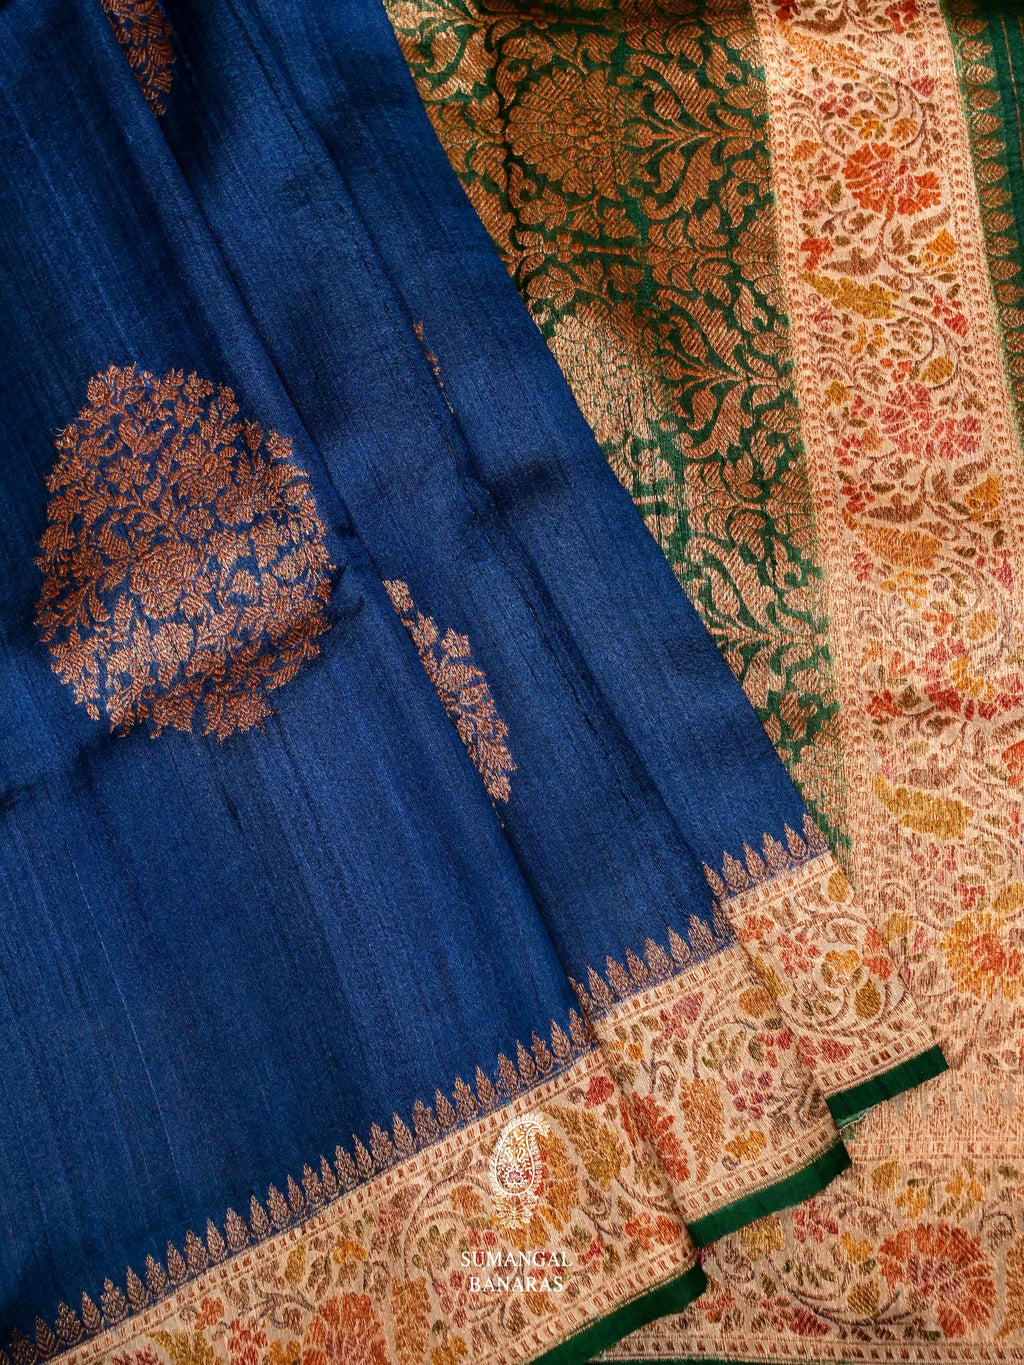 Handwoven Teal BLue Banarasi Tussar Silk Saree